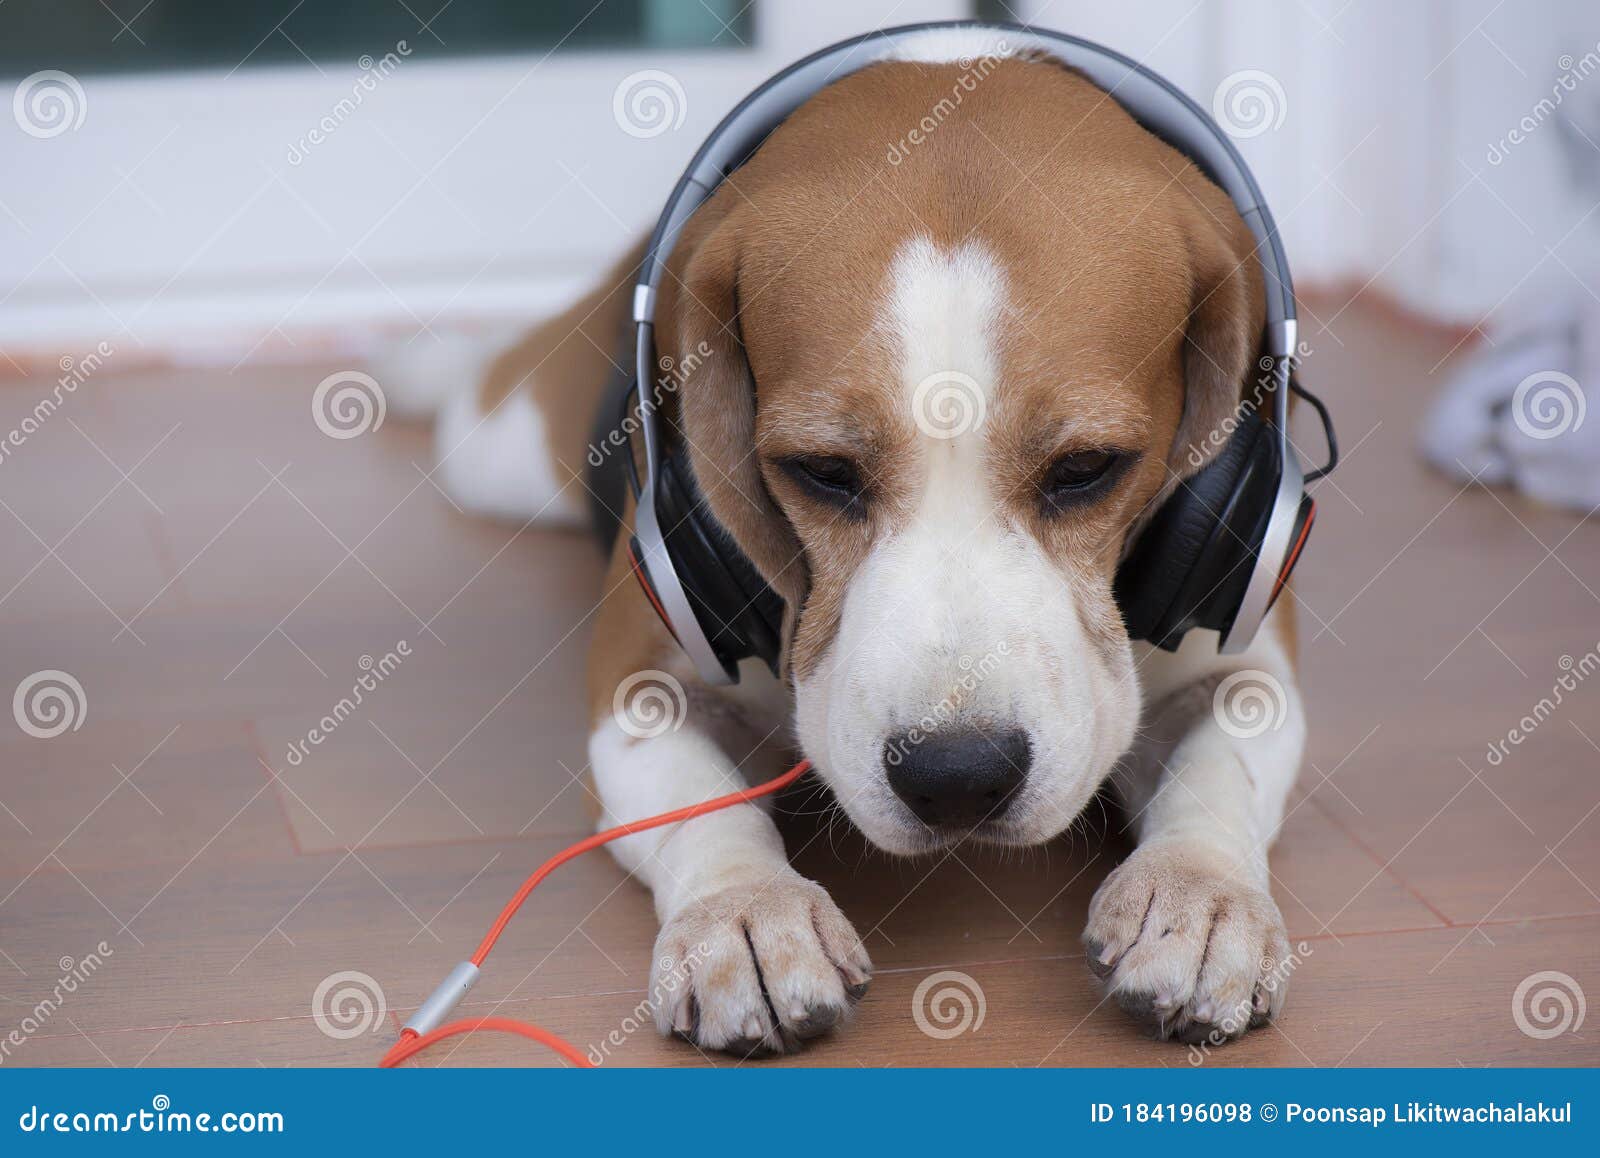 带着耳机唱歌的吉娃娃犬狗狗图片_蛙客网viwik.com